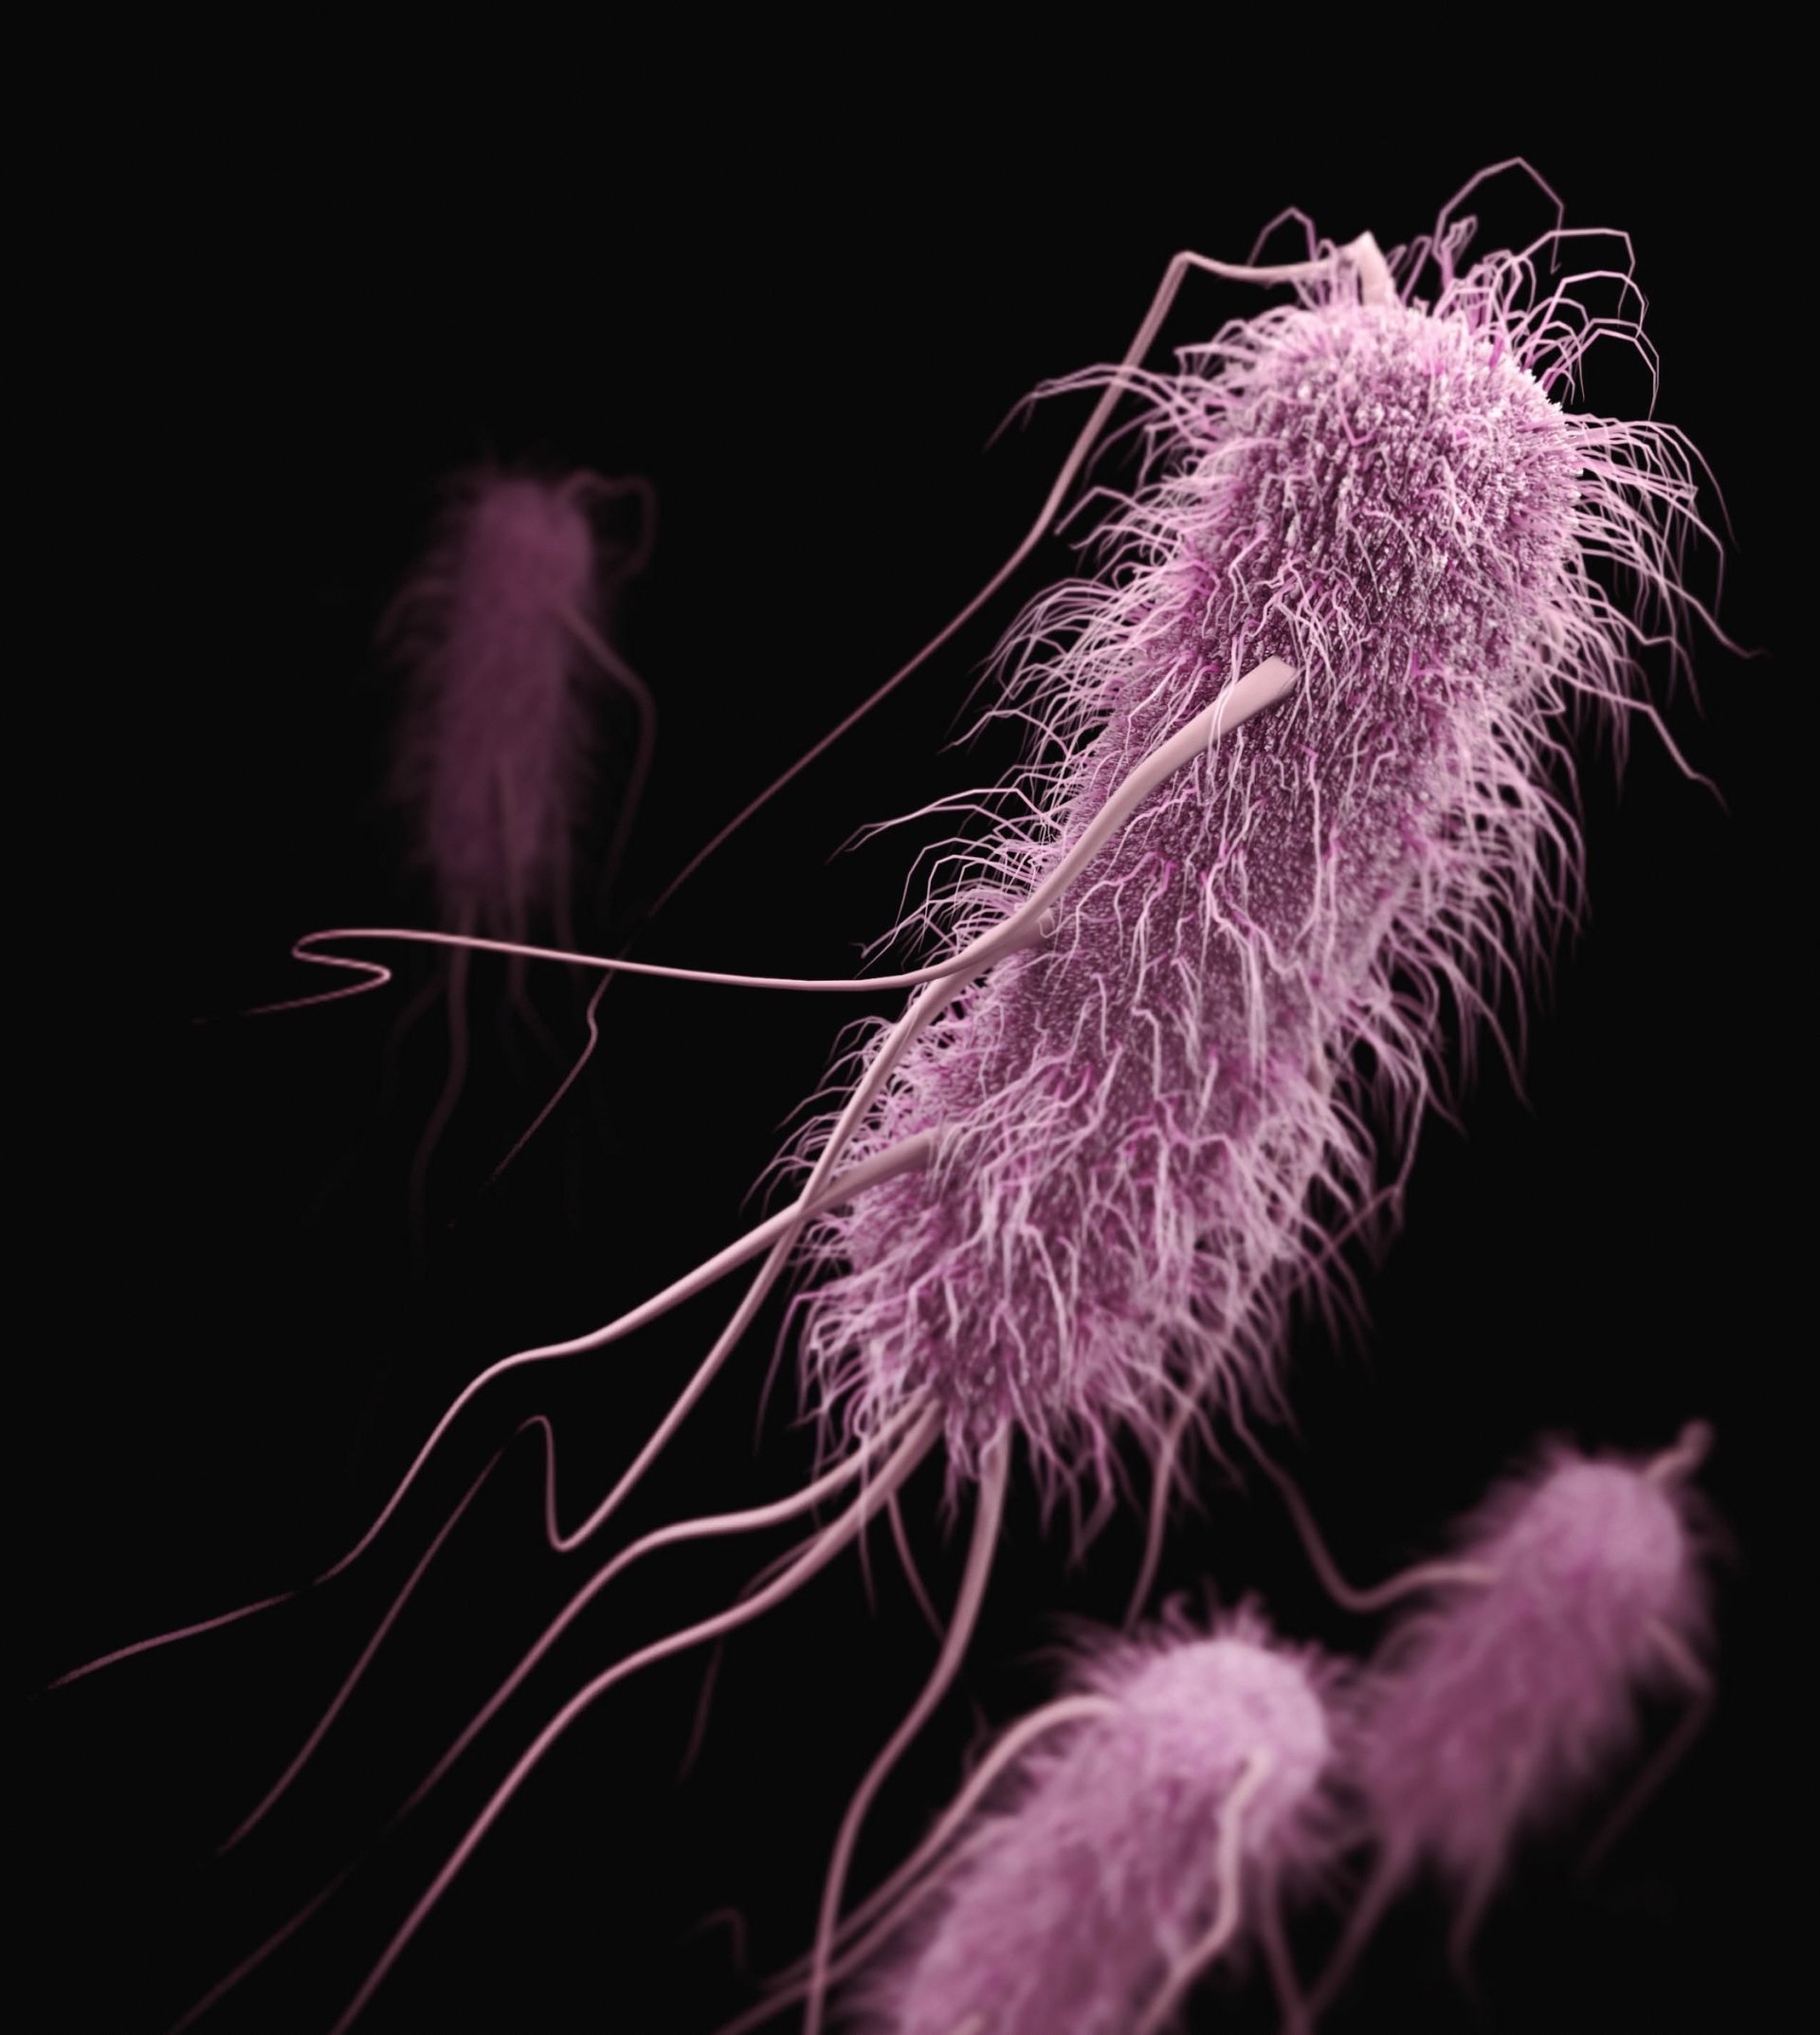 A gut bacteria exploring a dysbiotic microbiome.